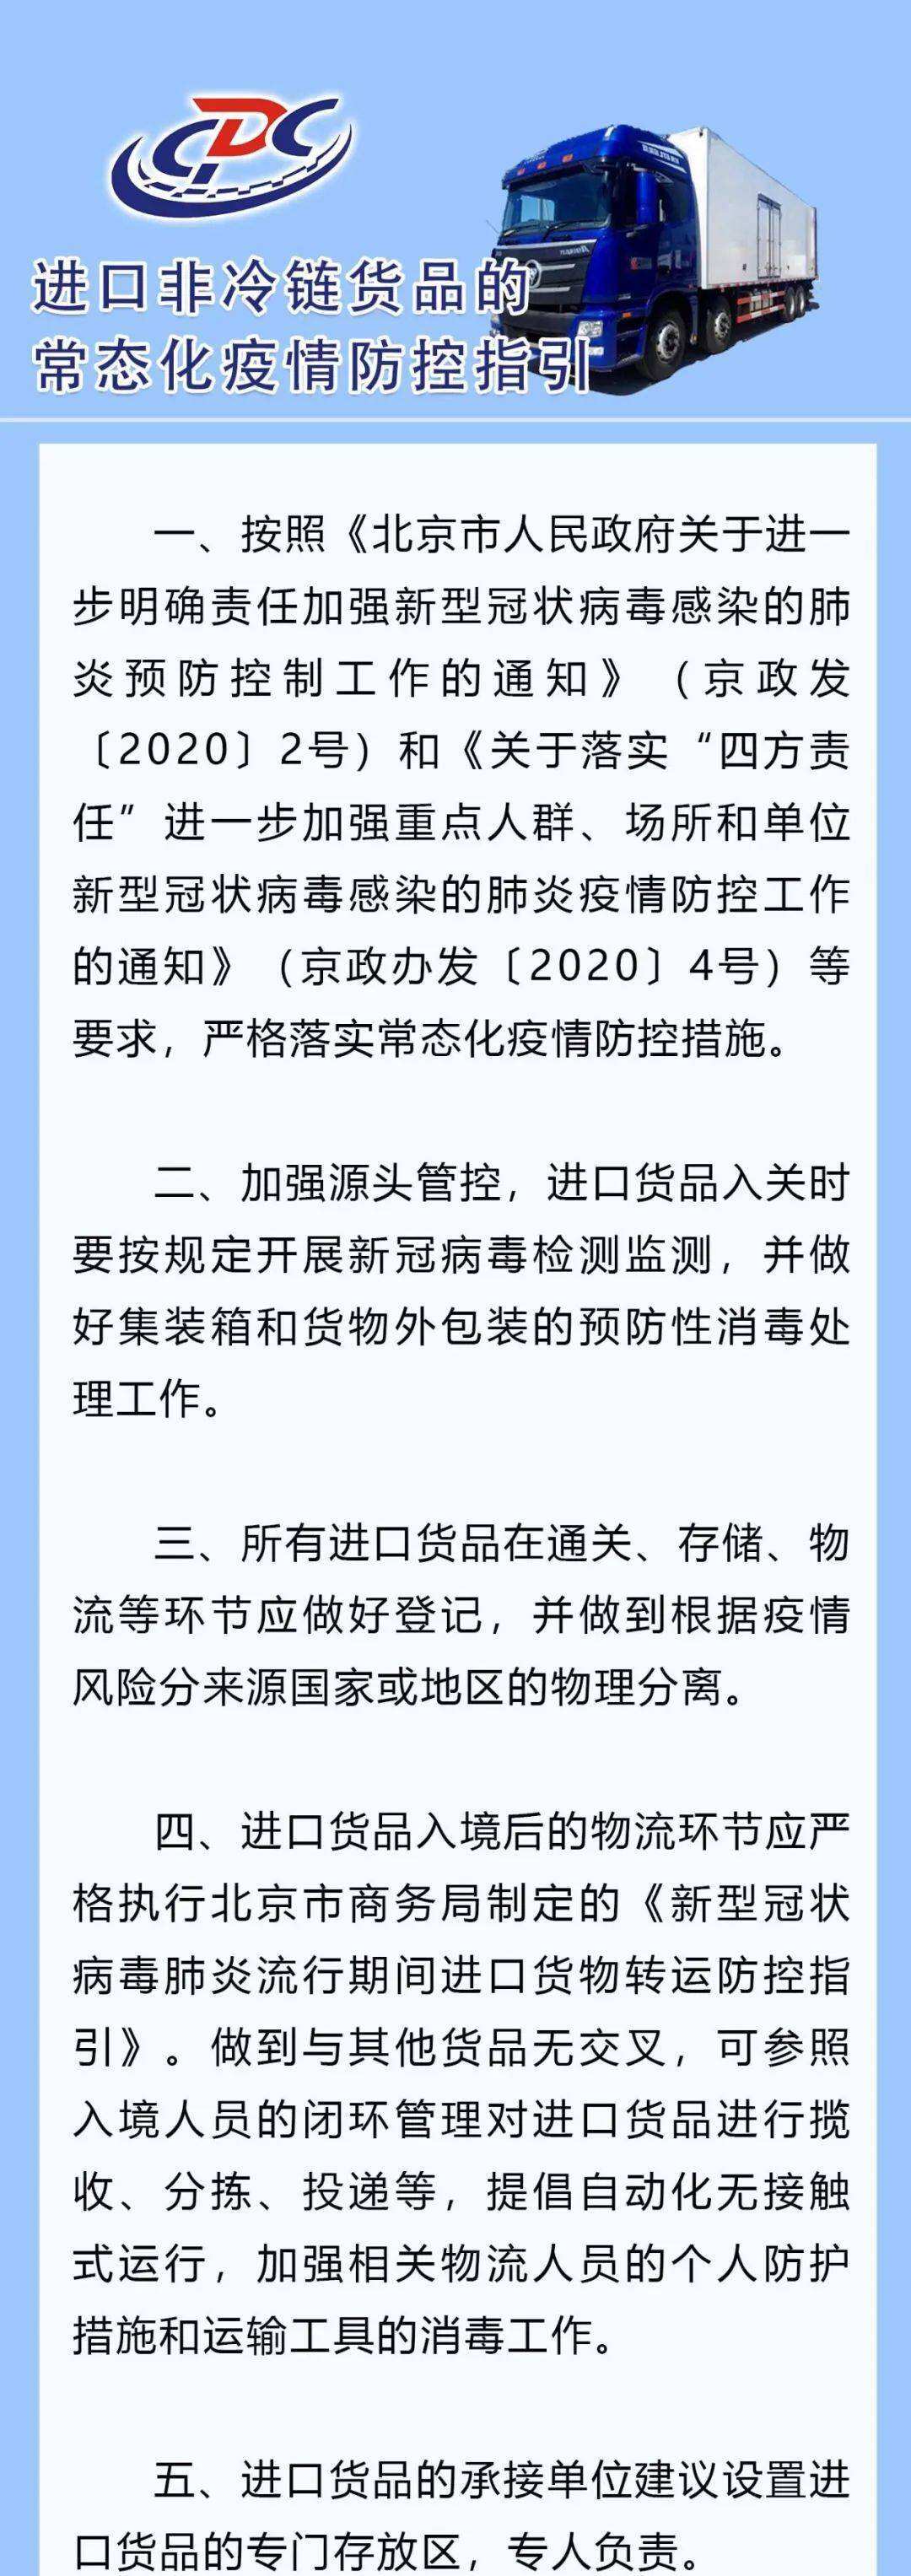 北京市疾控发布新版进口非冷链货品常态化防控指引